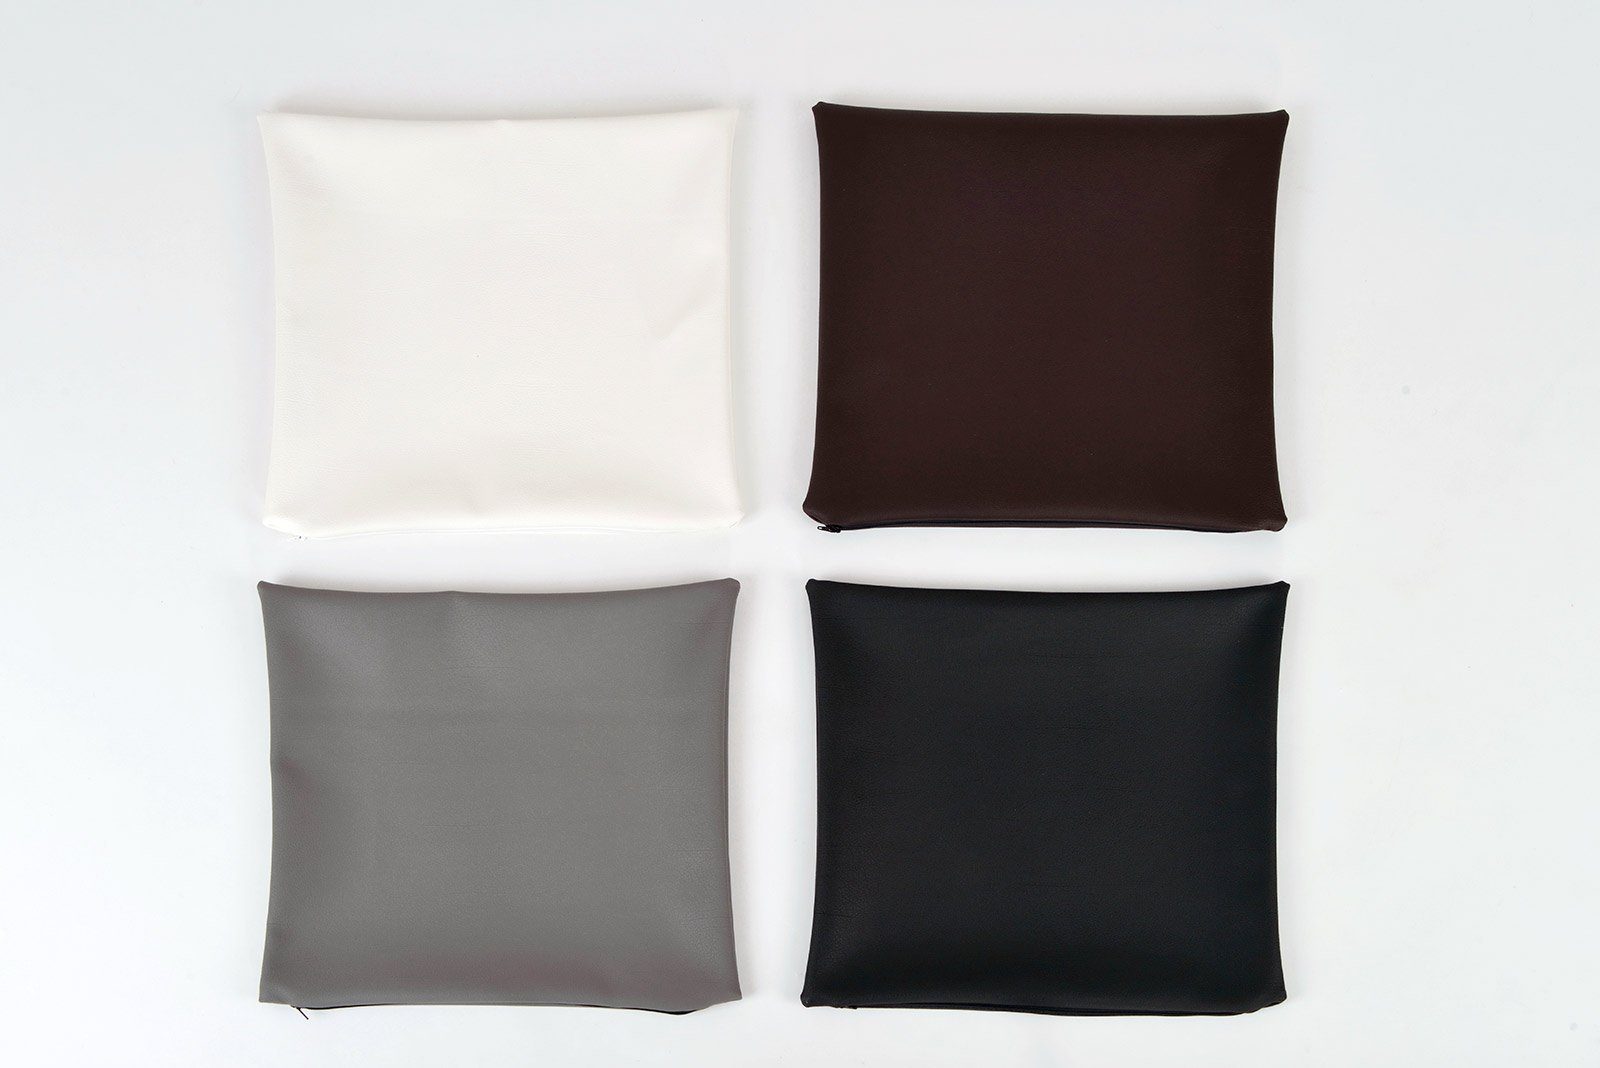 Kissenbezug schwarz, 40 braun weiß, Kunstleder x oder animal-design cm grau Kissenhülle, Kissenhülle 40